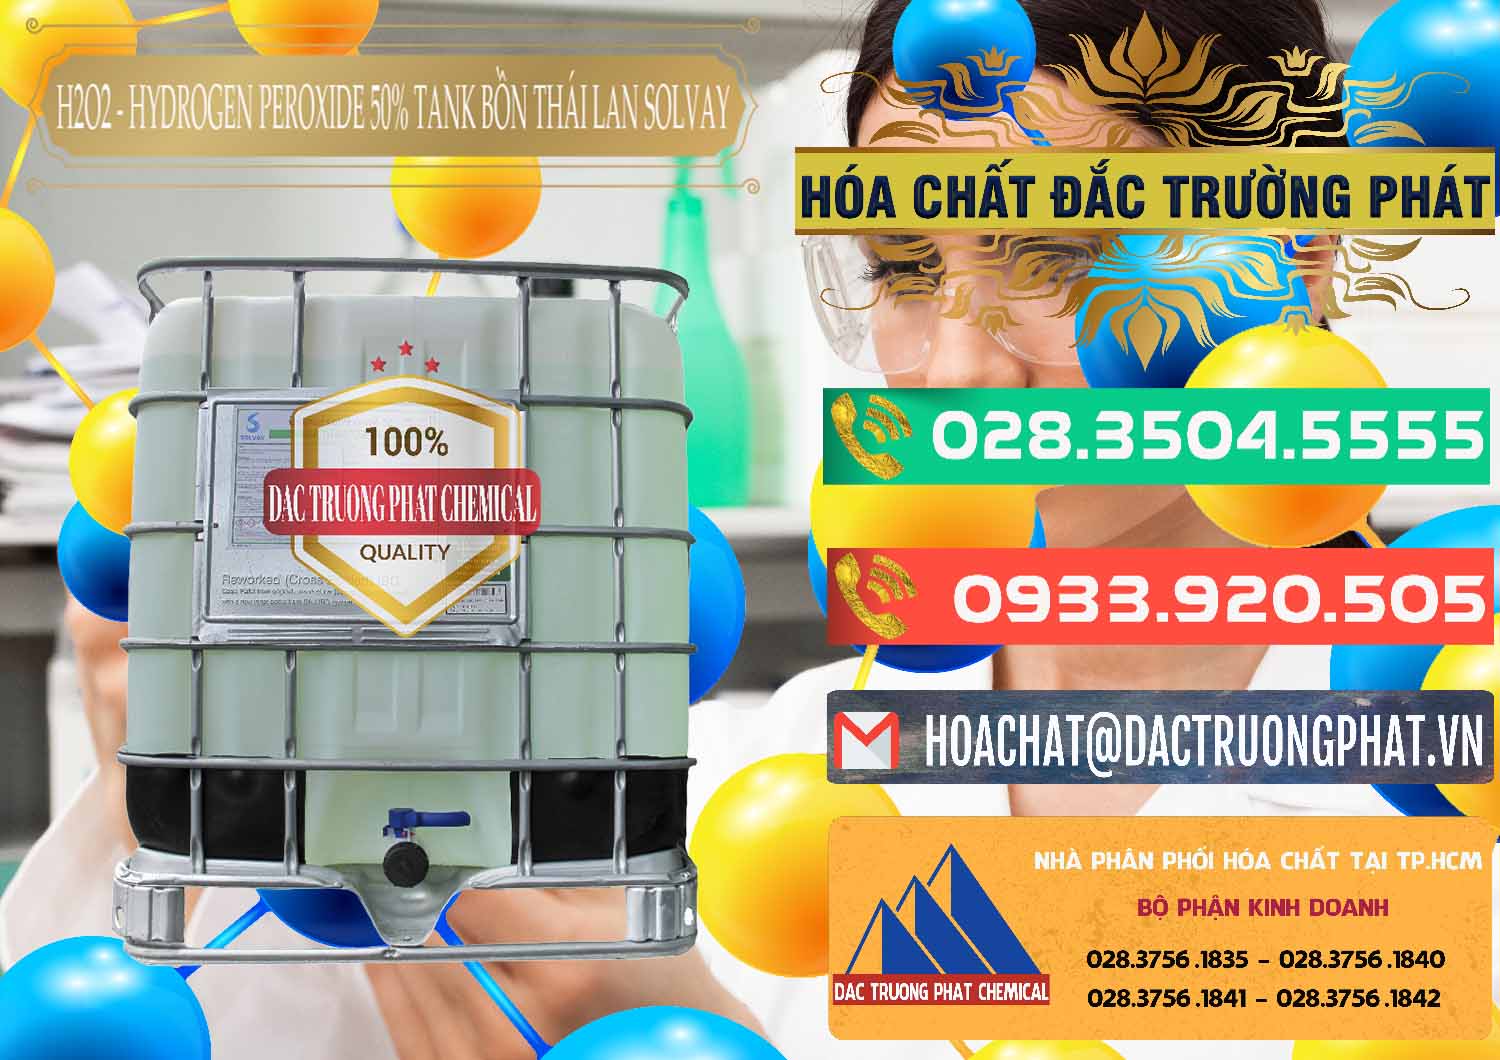 Nơi chuyên bán ( phân phối ) H2O2 - Hydrogen Peroxide 50% Tank IBC Bồn Thái Lan Solvay - 0072 - Chuyên cung cấp và phân phối hóa chất tại TP.HCM - congtyhoachat.com.vn